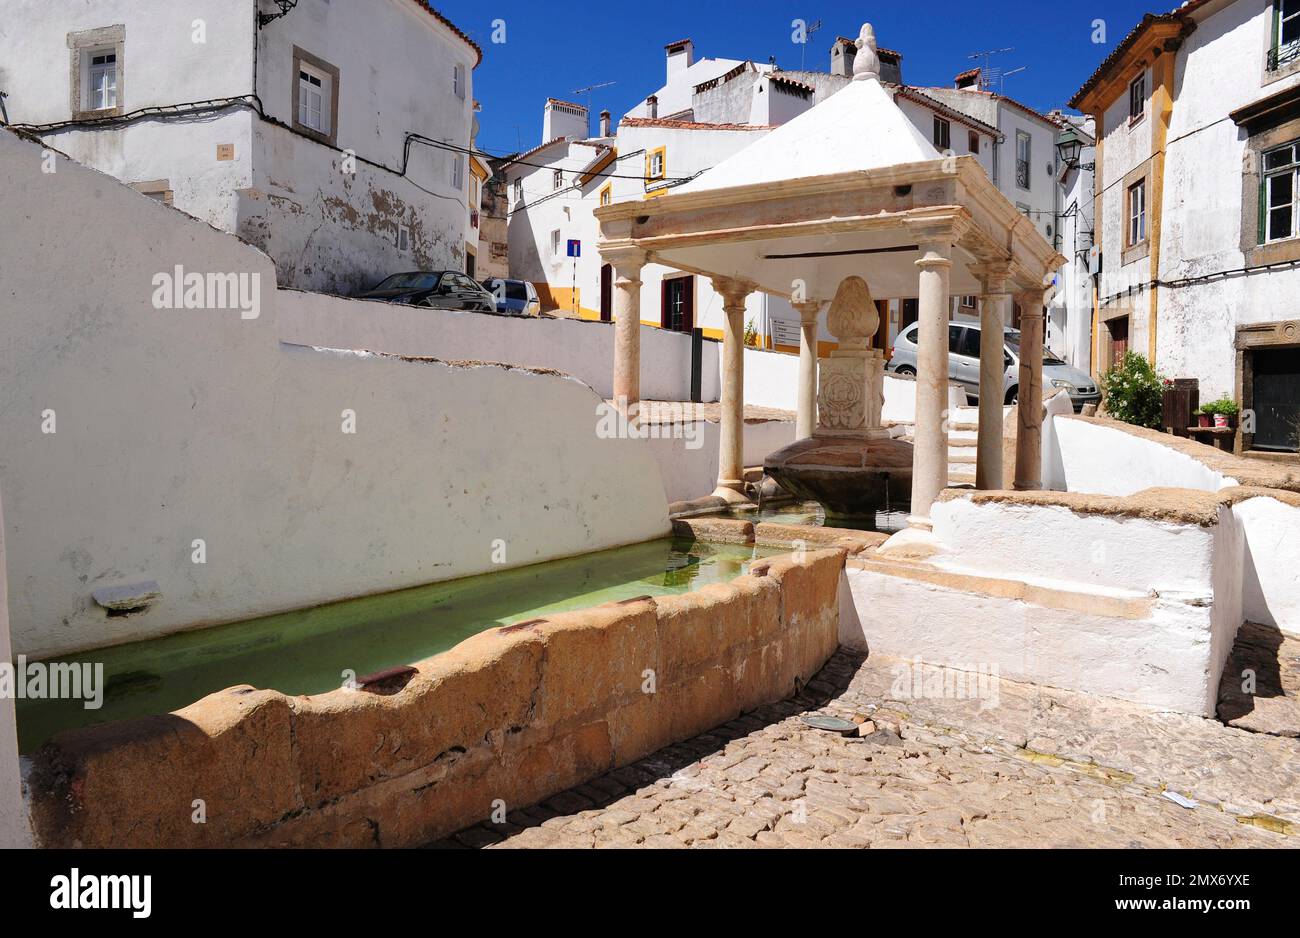 Castelo de vide, fonte da Vila (Renaissance) dans le quartier juif. Portalegre, Alentejo, Portugal. Banque D'Images